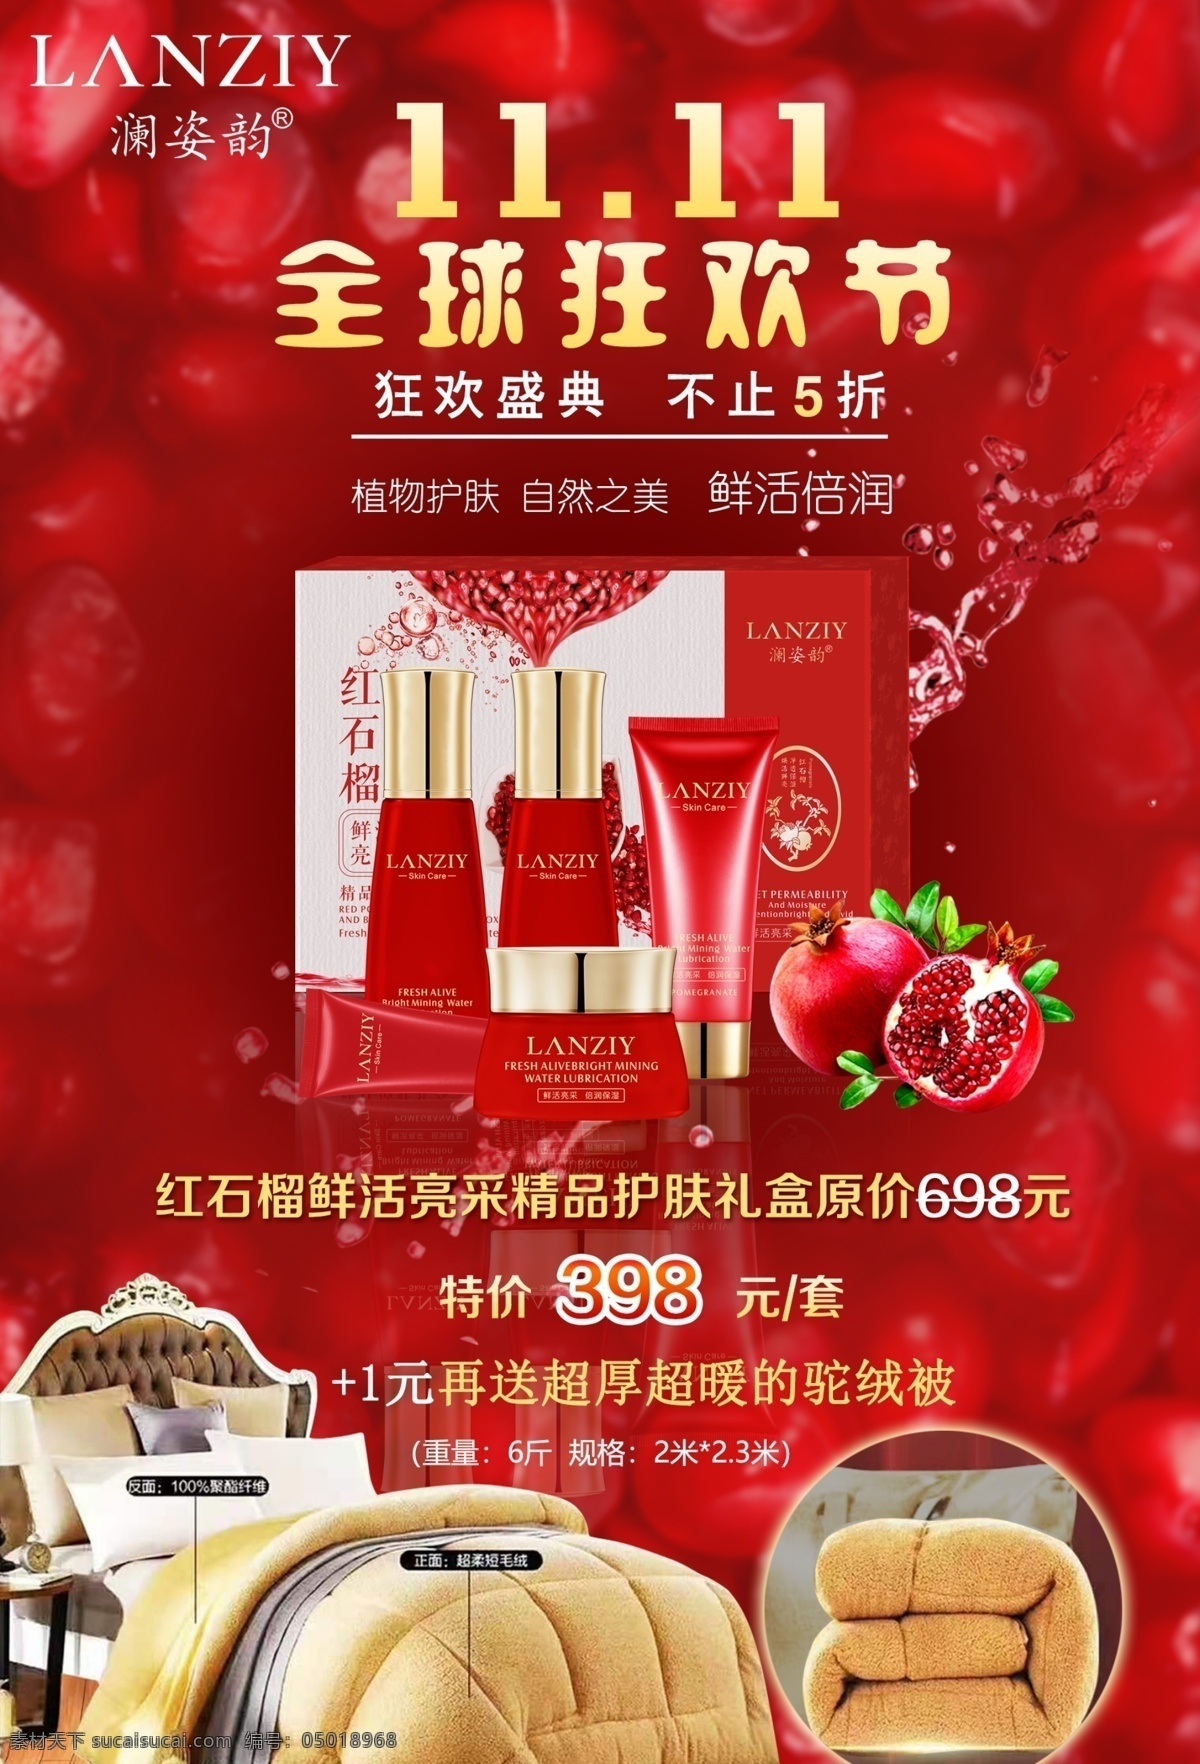 护肤品广告 红色背景 红色瓶子 化妆瓶 石榴 广告印刷类 分层